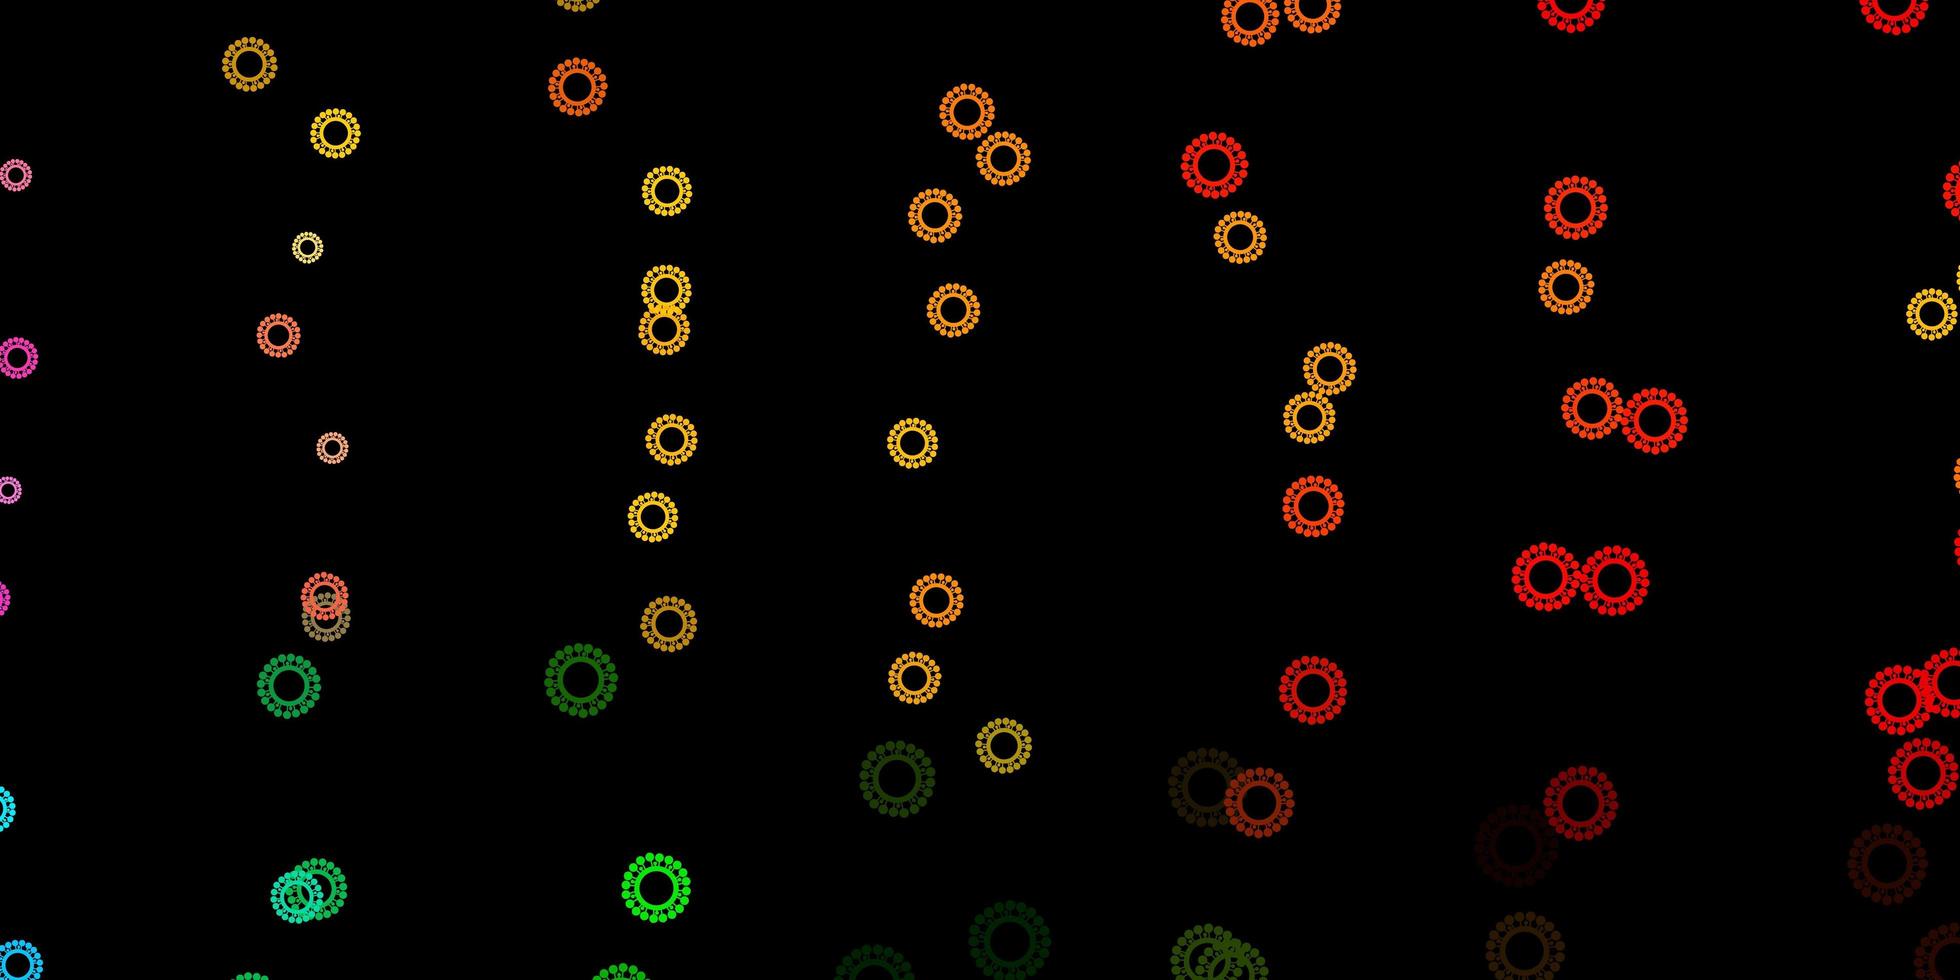 sfondo vettoriale multicolore scuro con simboli di virus.